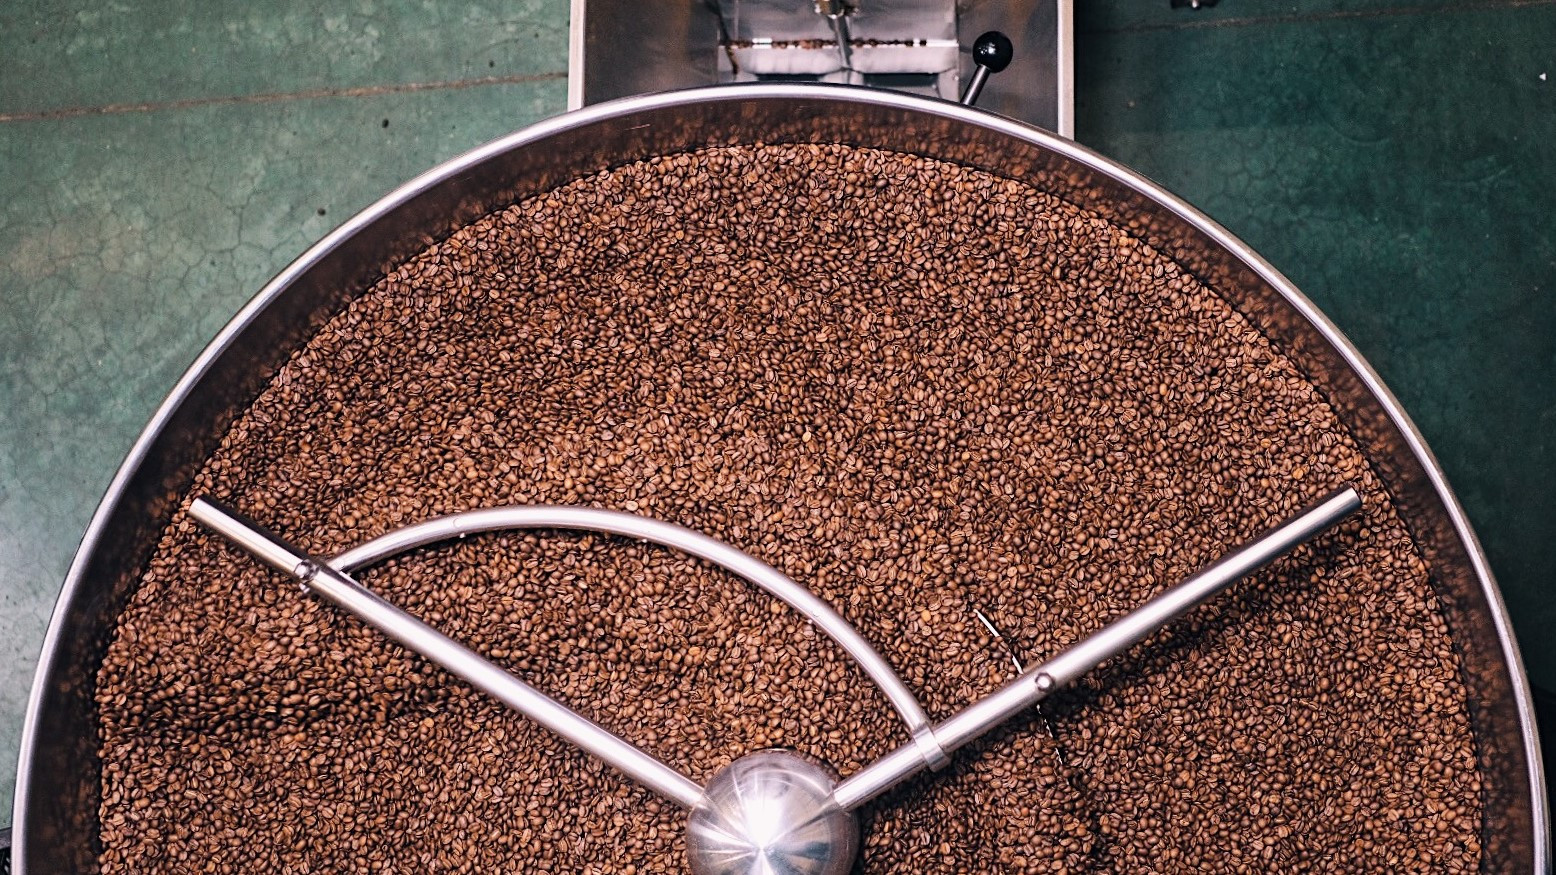 Фронт испарения: что это и какое значение имеет для обжарки кофе